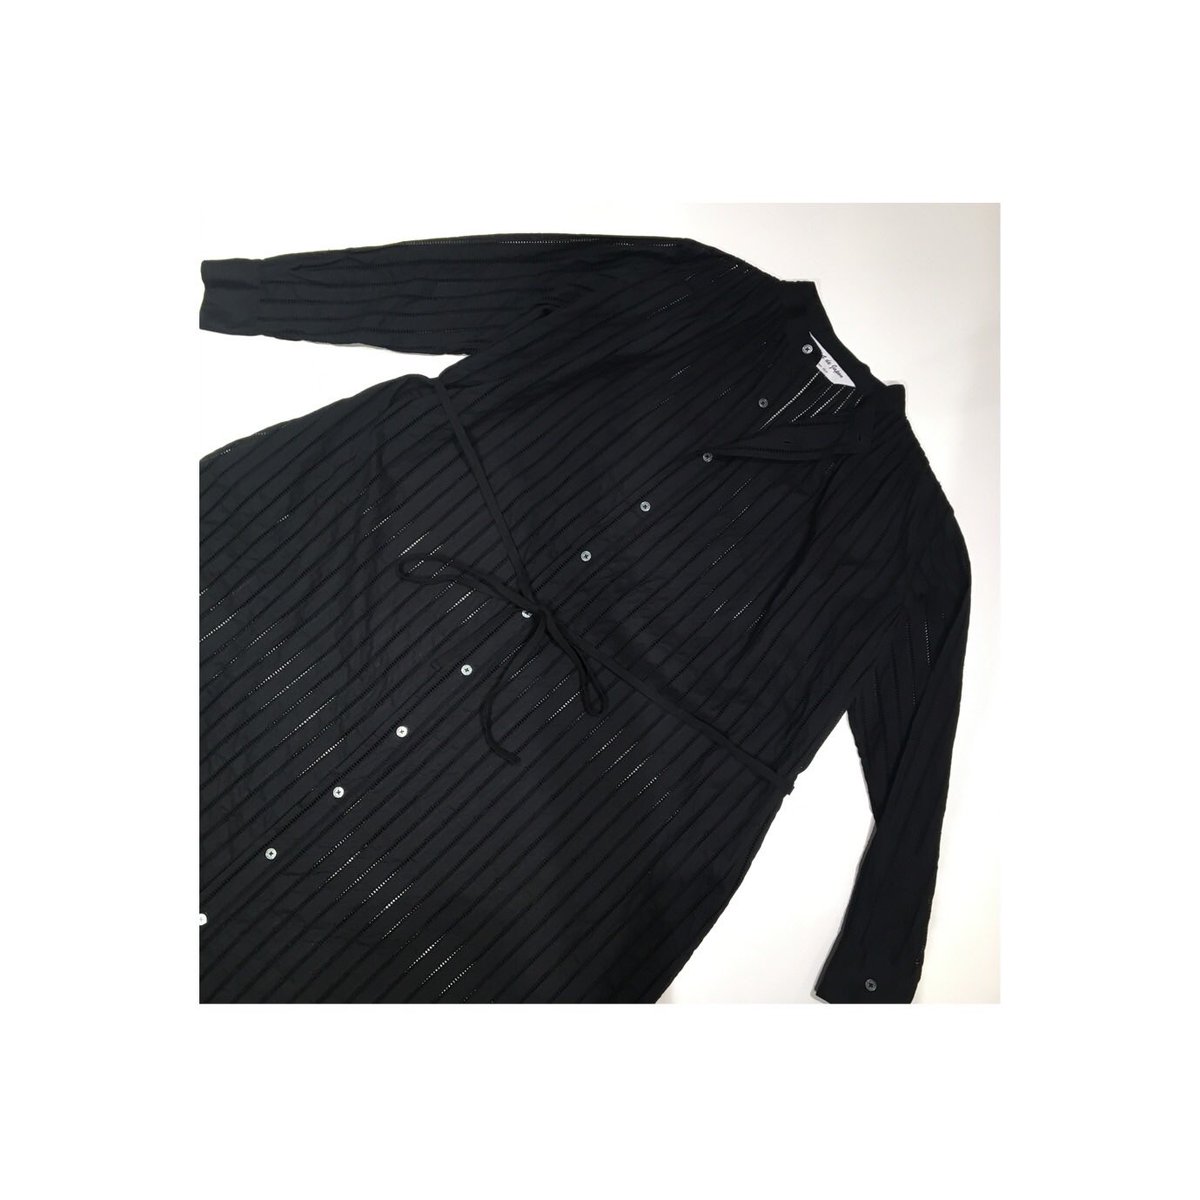 渋谷スクランブルスクエア4F
point de Japon 受注販売会 
12/14まで開催中
#exhibition #shibuya #tokyo #shibuyascramblesquare #december #madetoorder #clothesmaking #cottonlace #pointdejapon #embroidery #pleated #shirtdress #black #madeinjapan